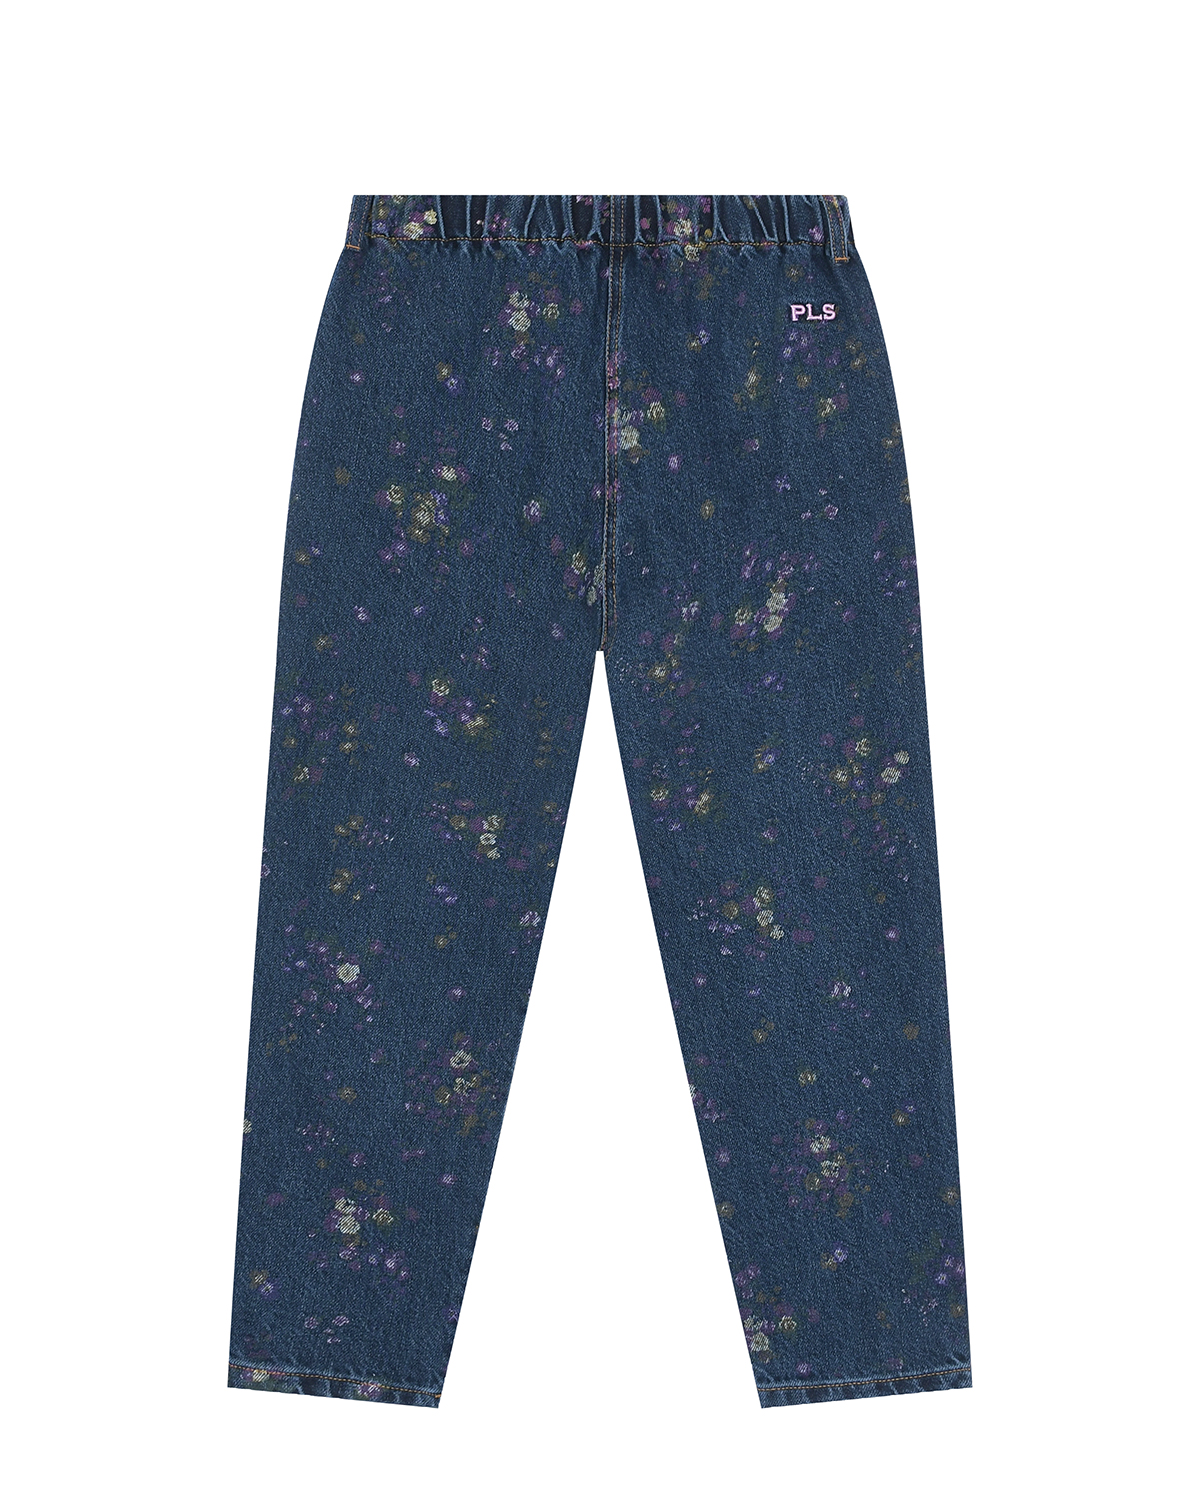 Синие джинсы с цветочным принтом Philosophy детские, размер 152 - фото 2